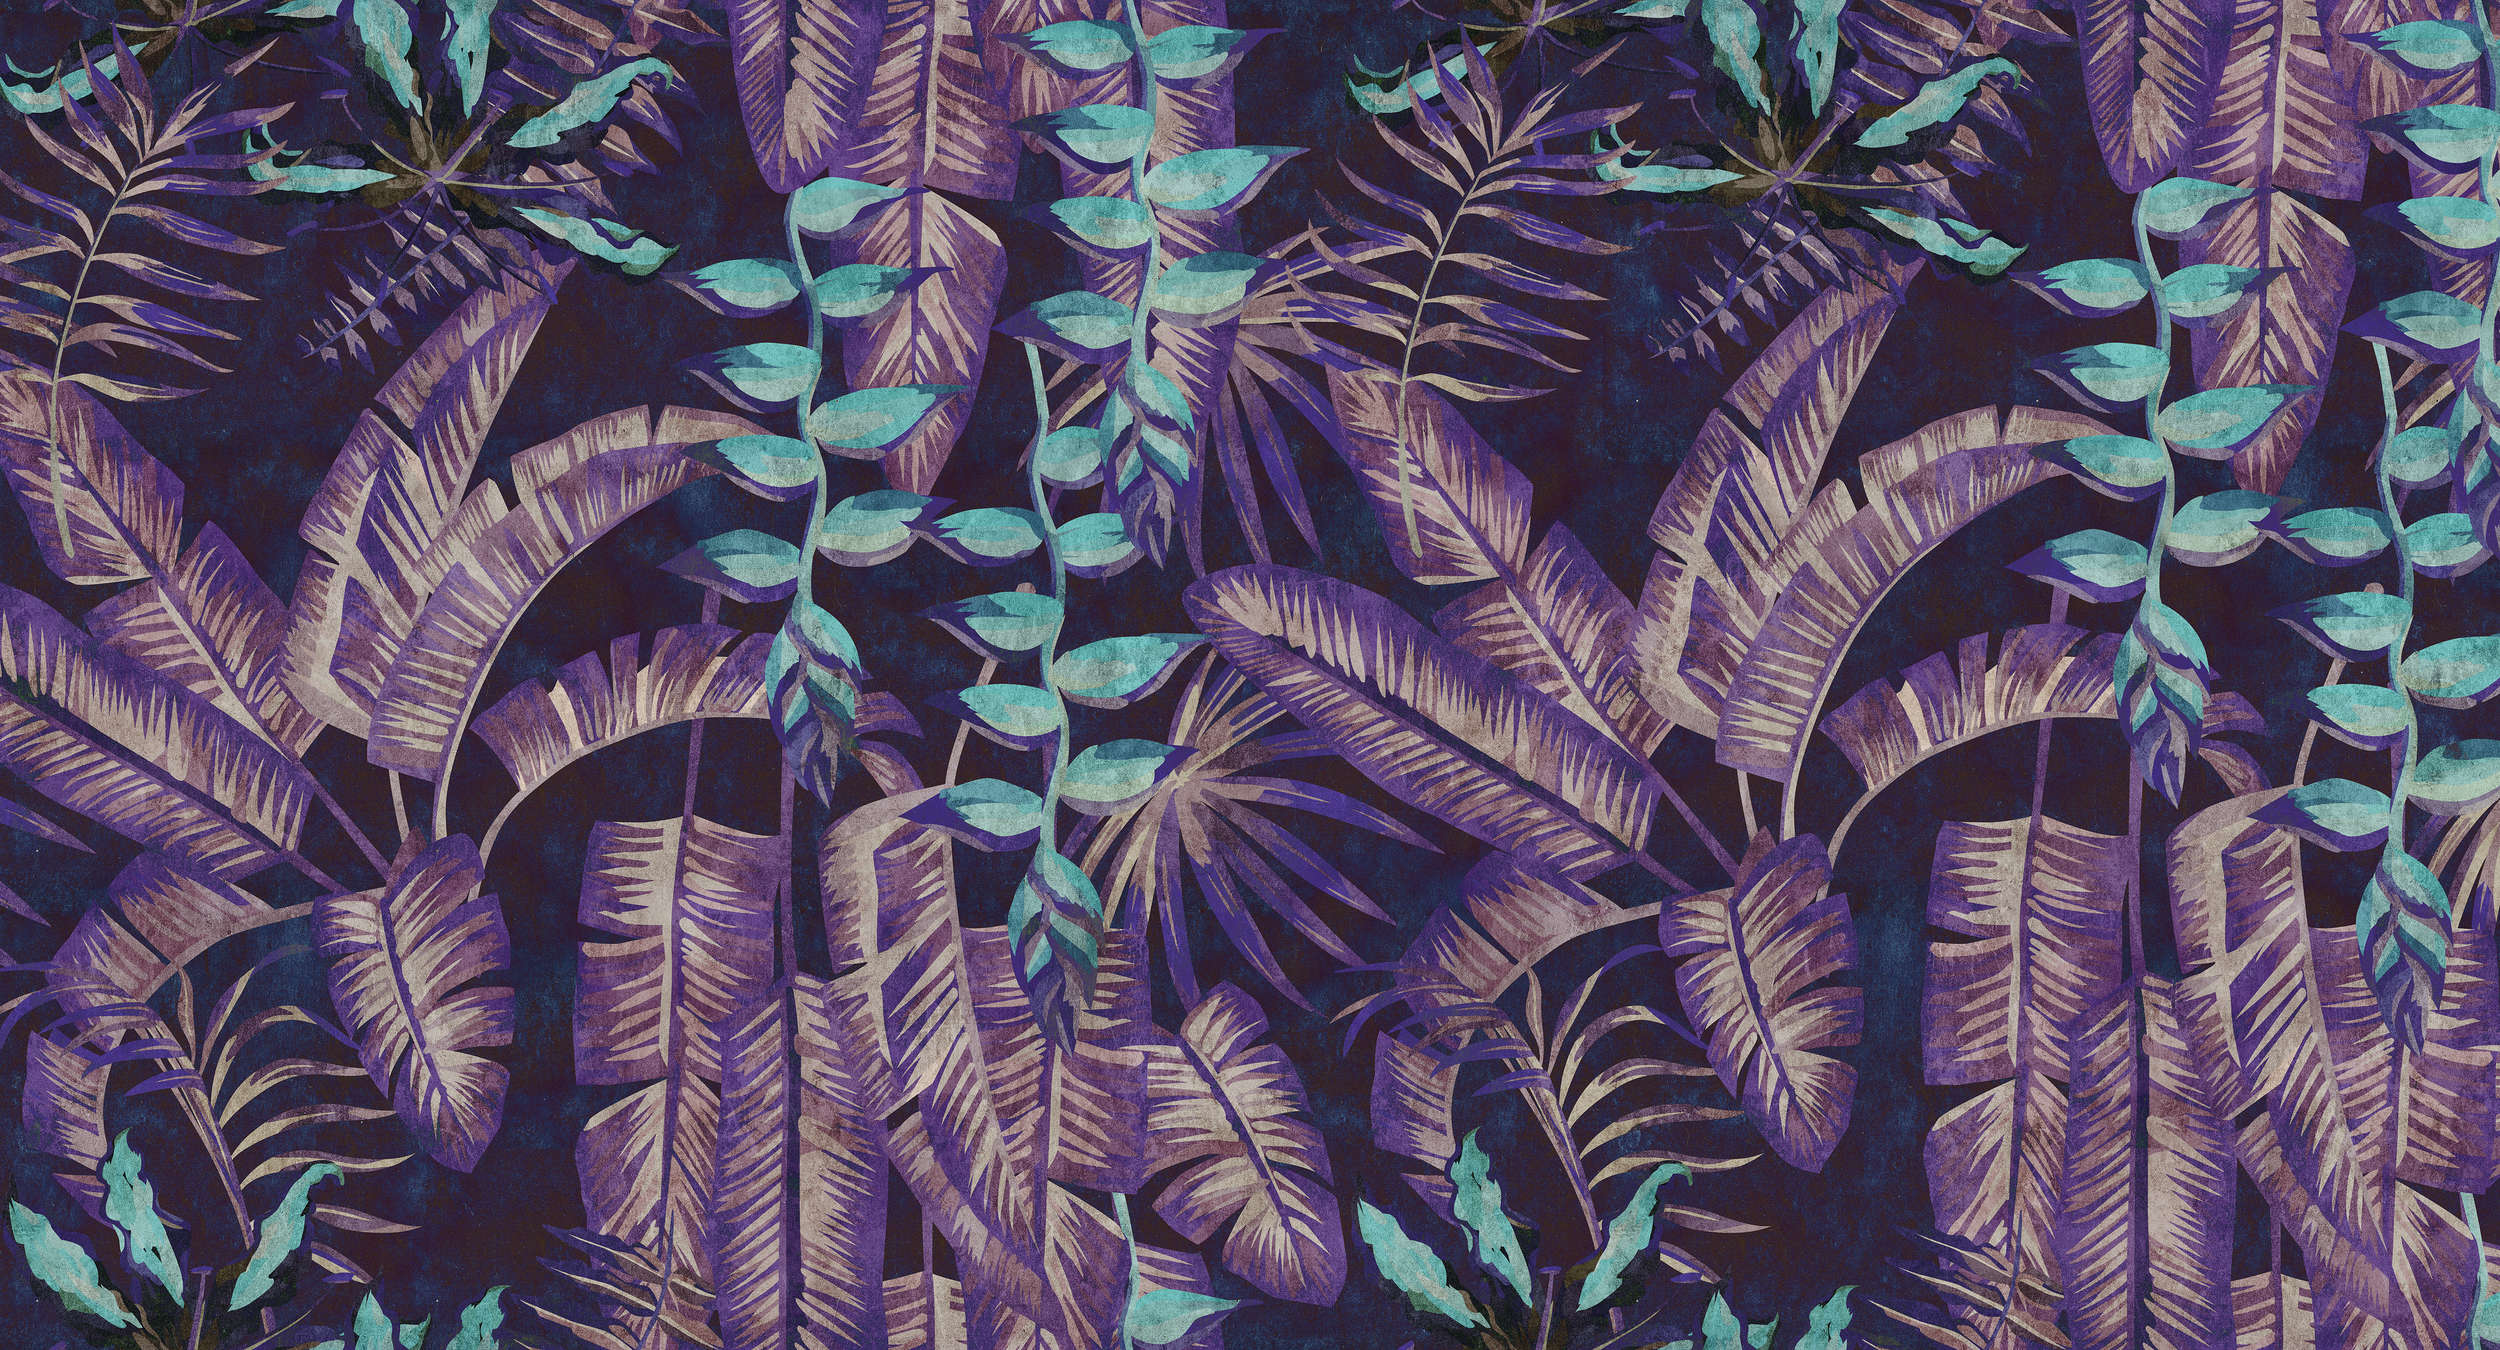             Tropicana 6 - Papier peint numérique structure papier buvard avec motif jungle - turquoise, violet | structure intissé
        